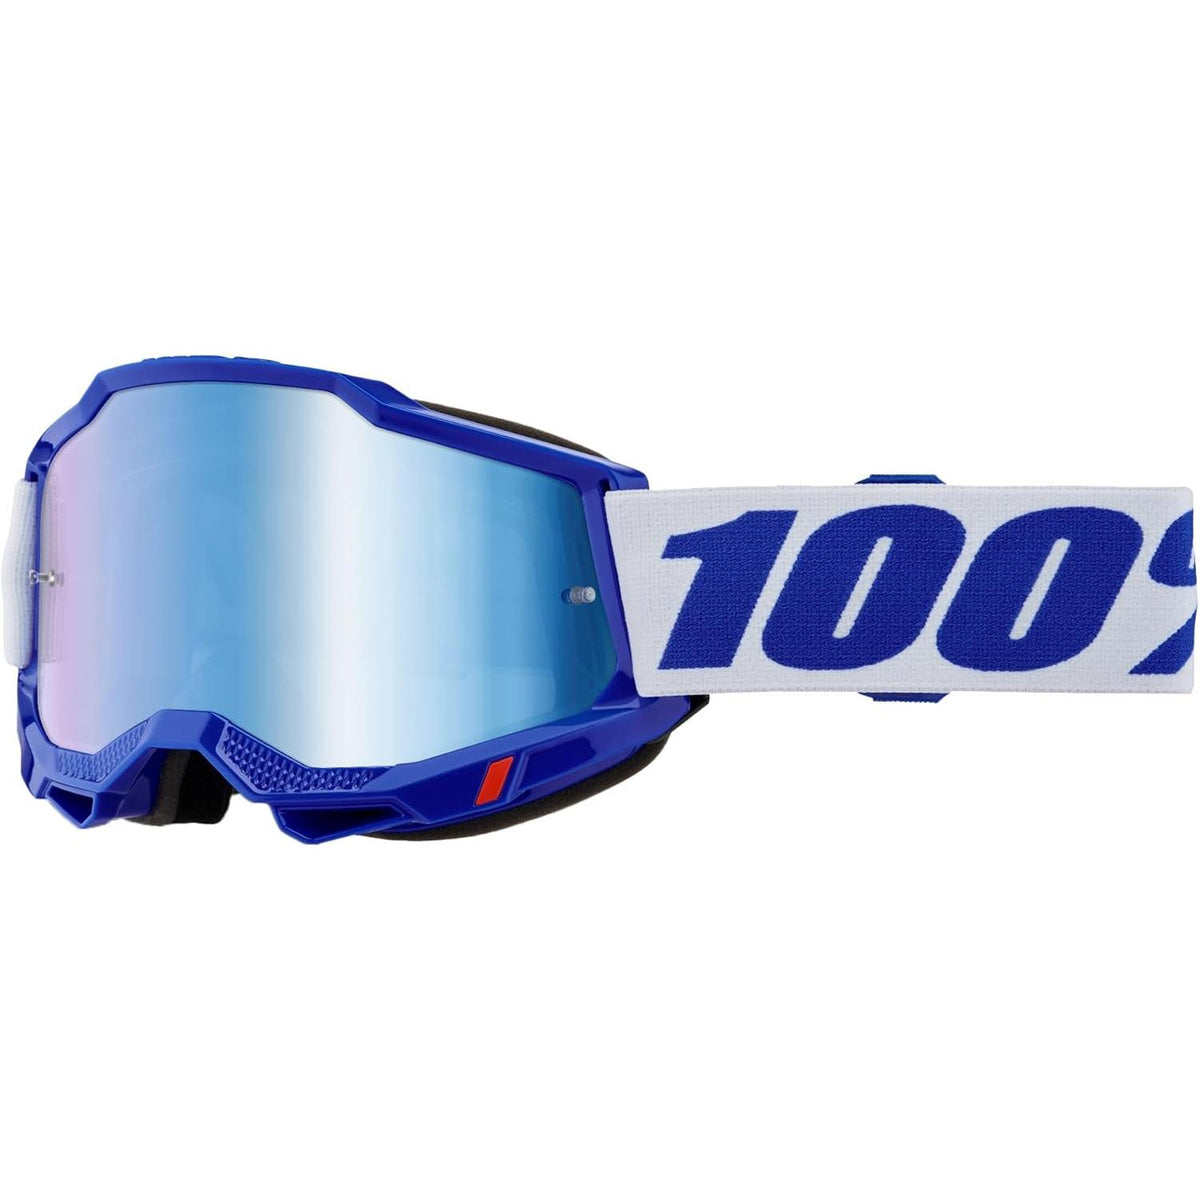 100% Accuri 2 Moto/MTB Goggle - Blue; Mirror Blue